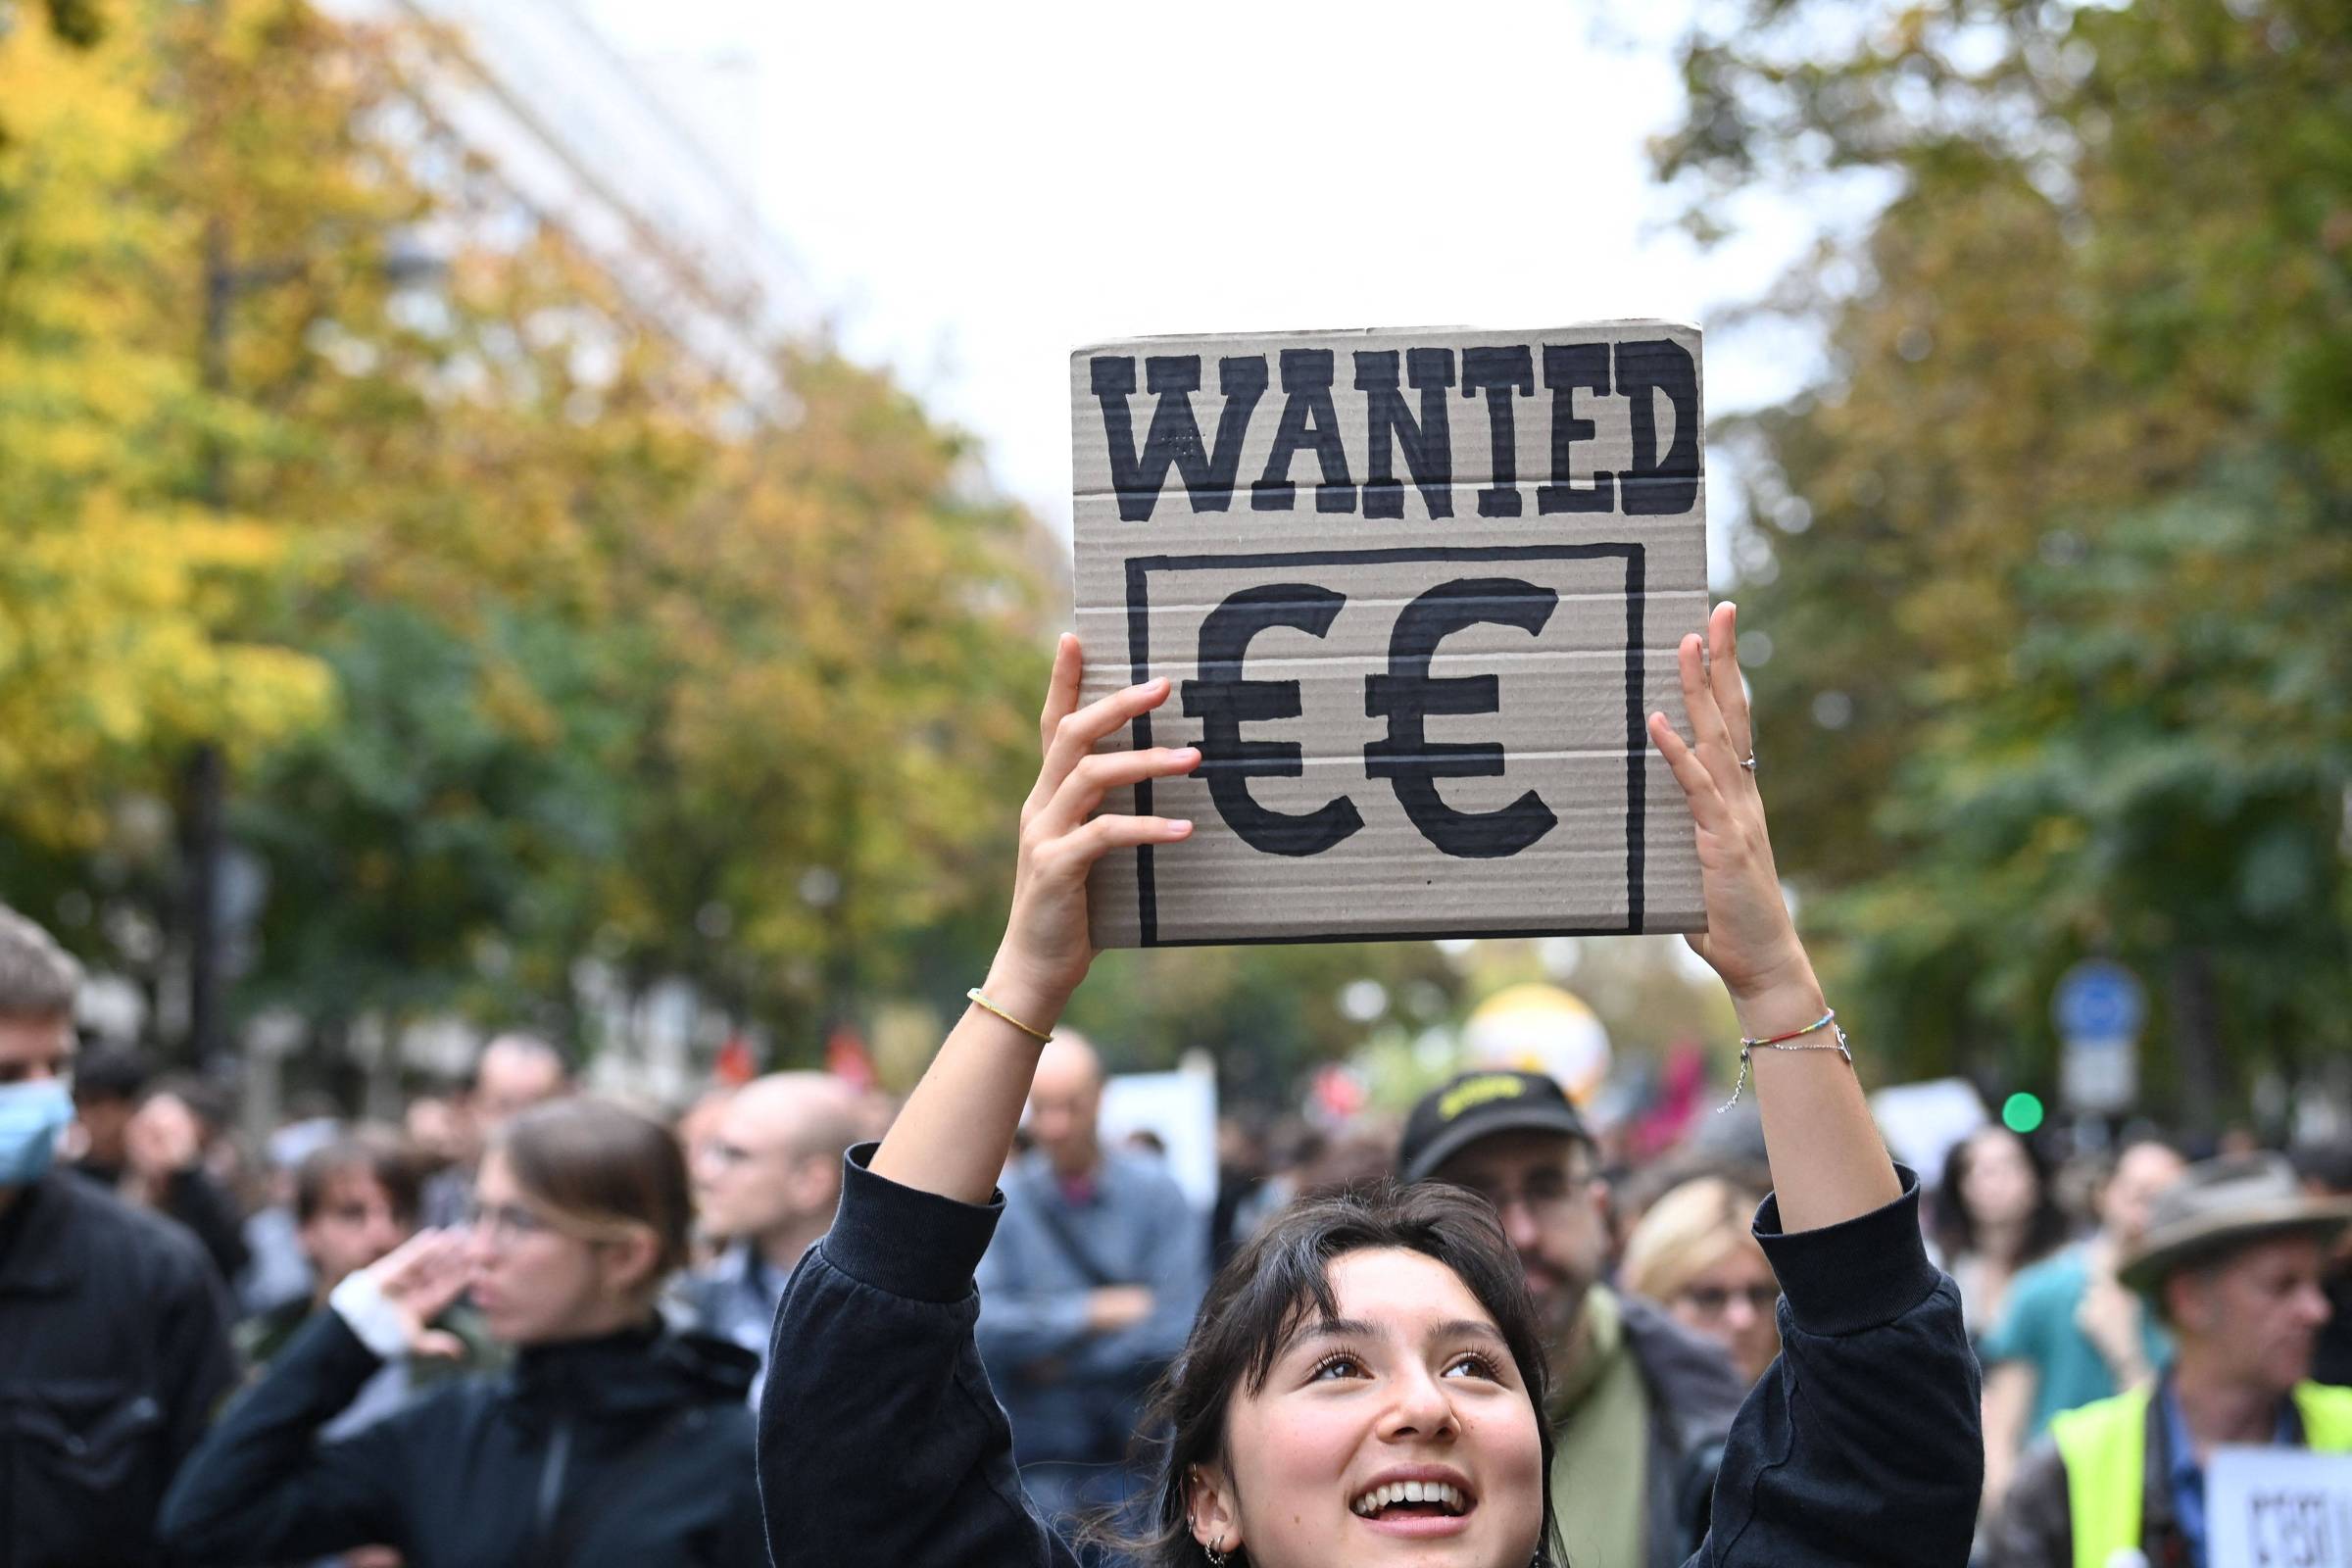 Huelga general en Francia por aumento del salario mínimo – 18/10/2022 – Mercado